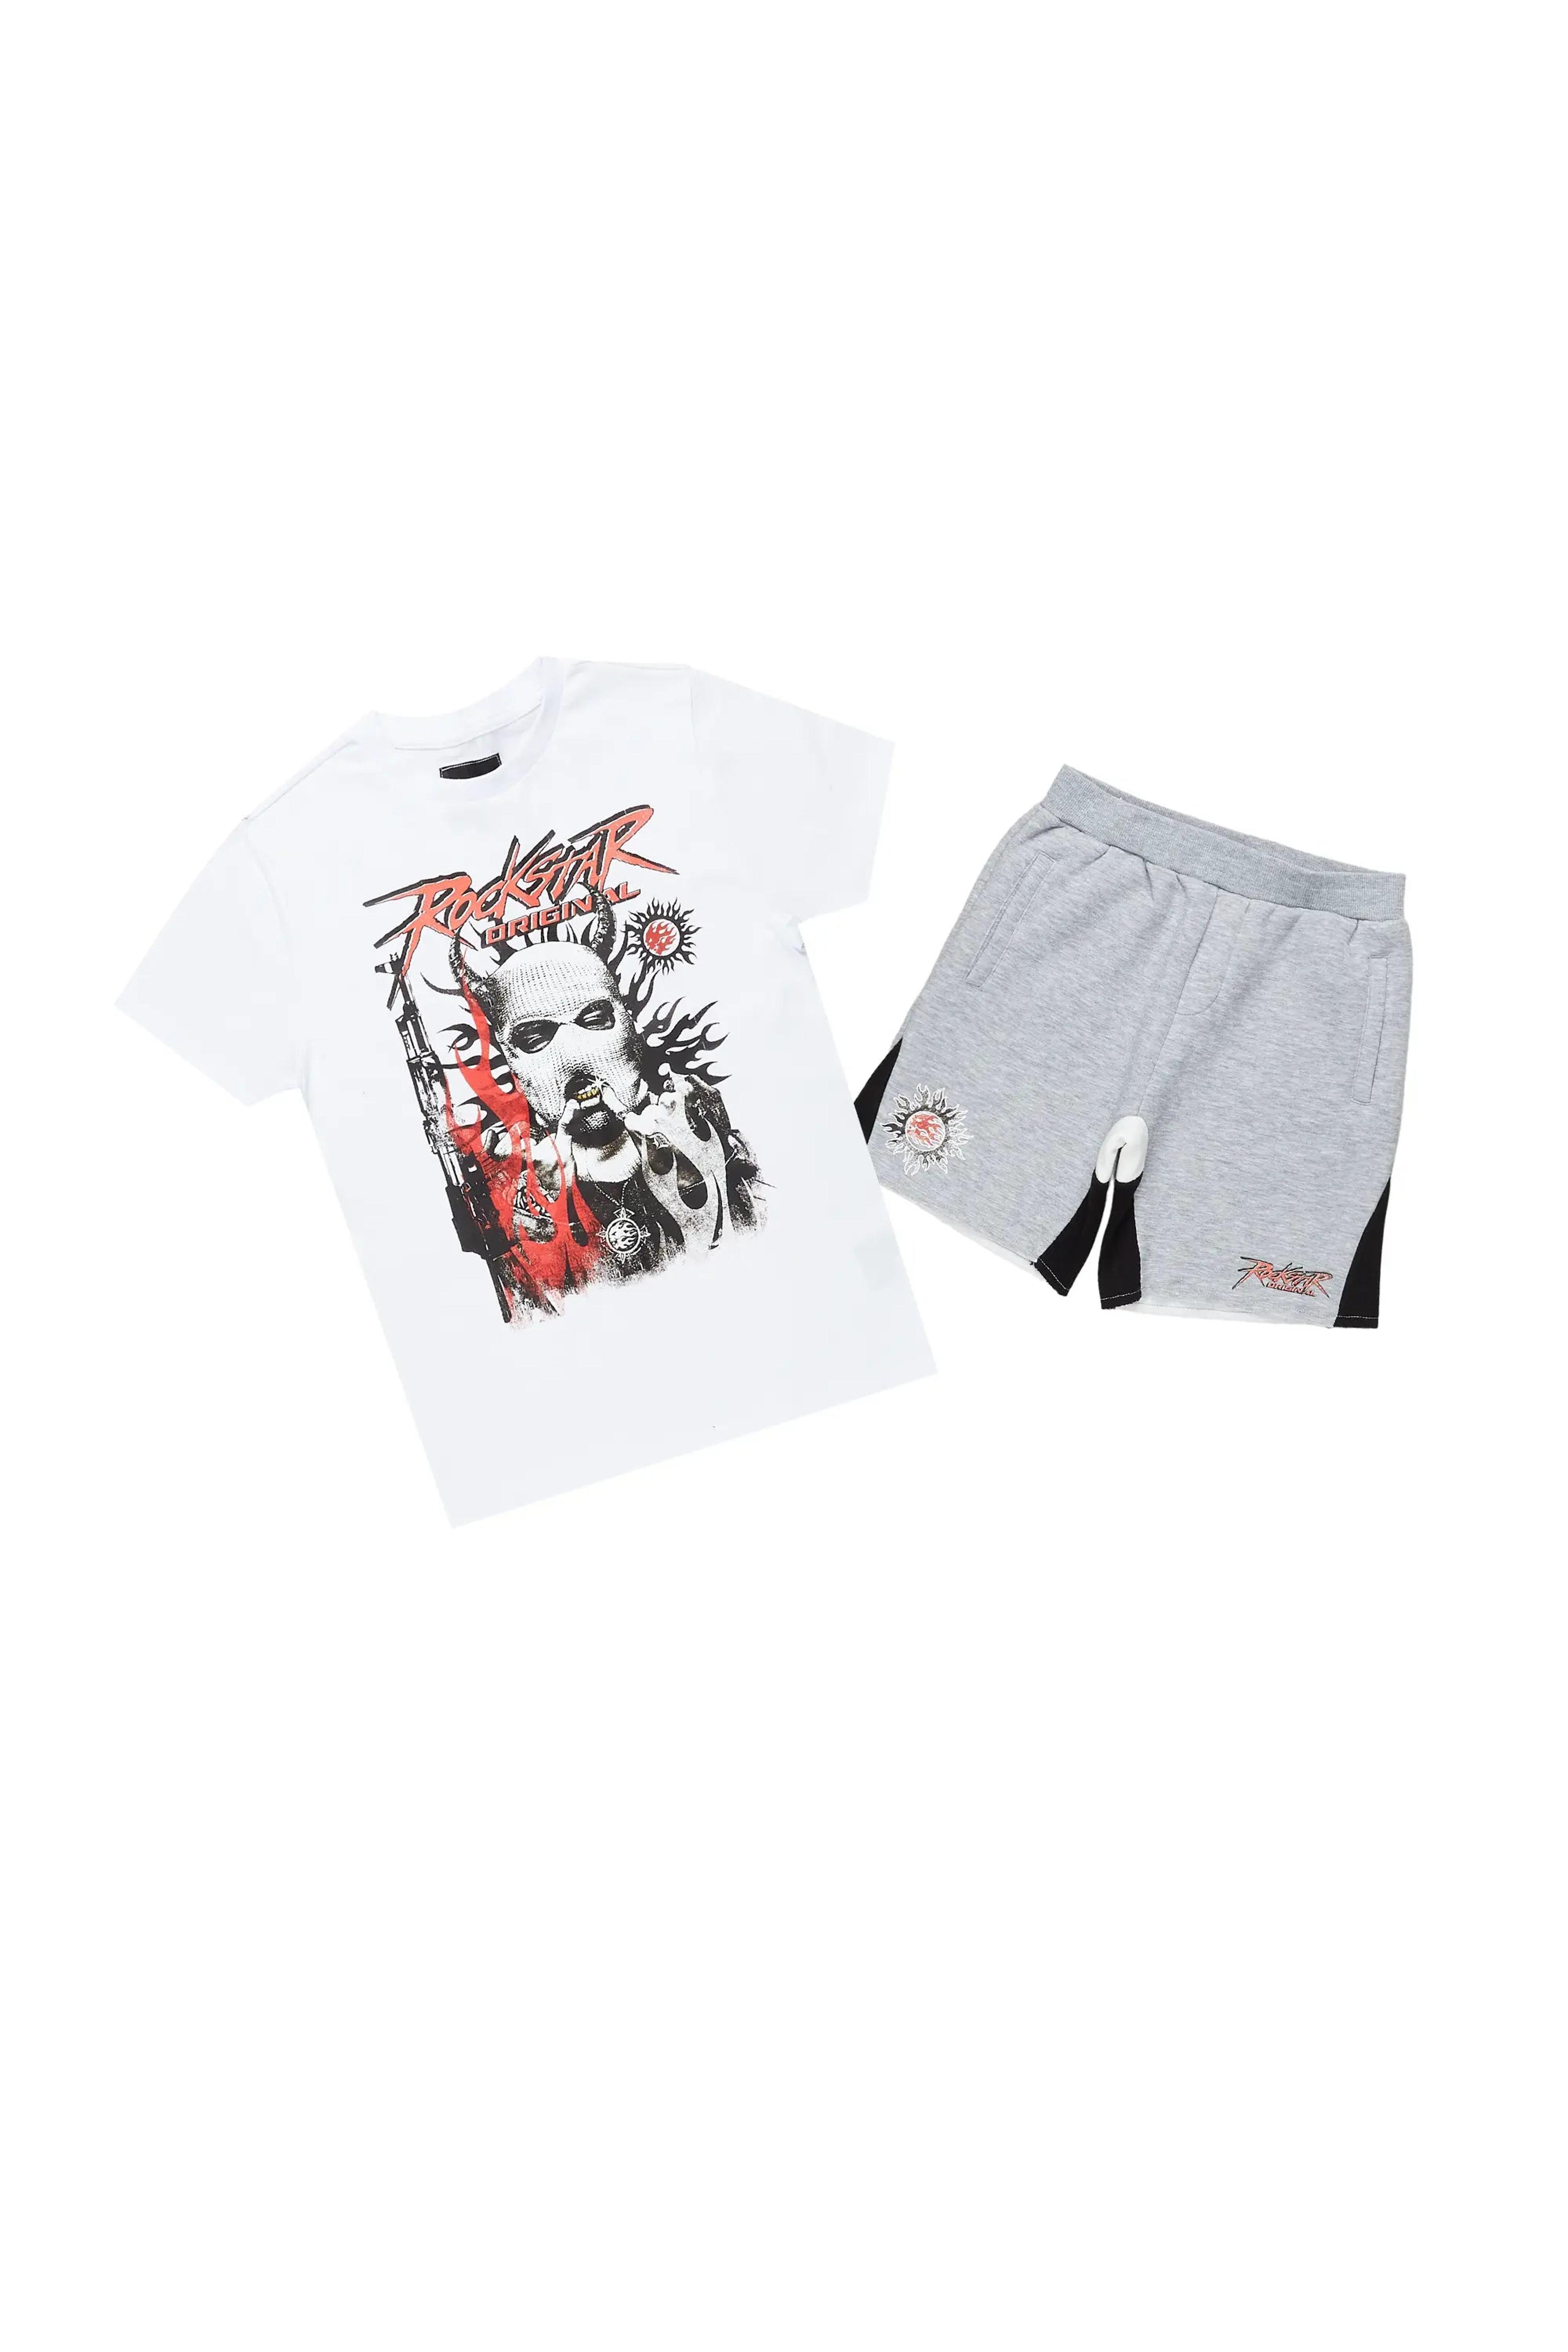 Boys Merci White/Grey T-Shirt Short Set